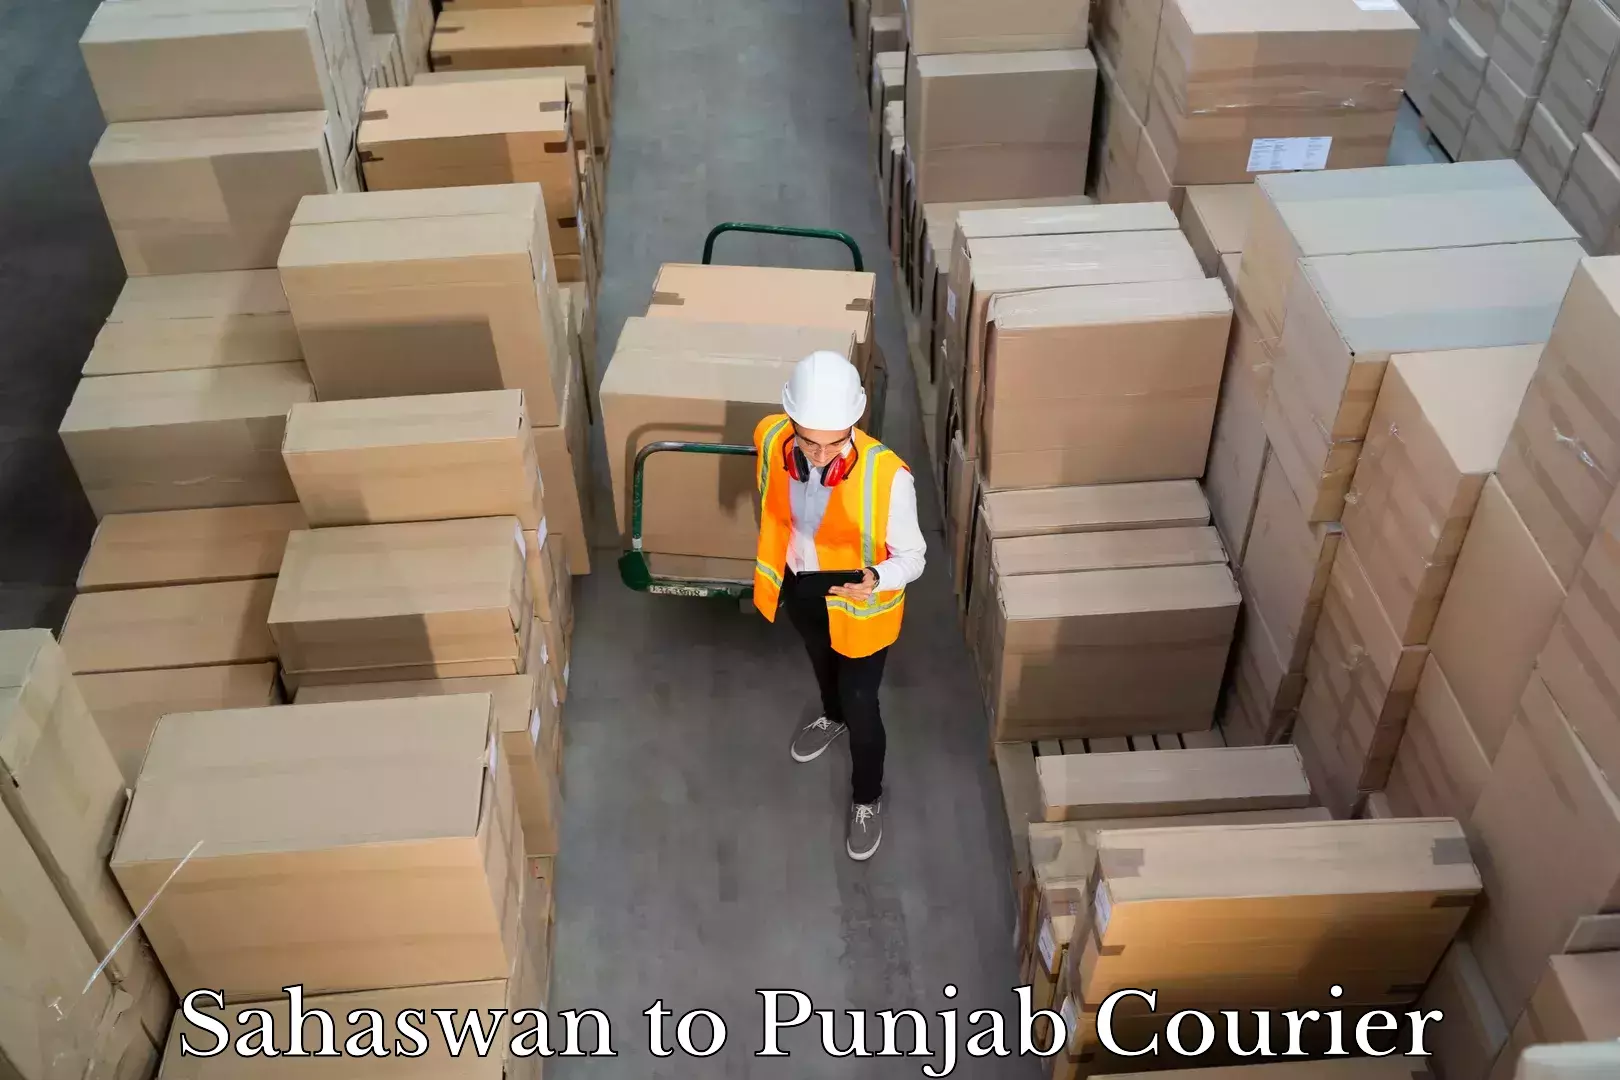 Luggage shipping service Sahaswan to Punjab